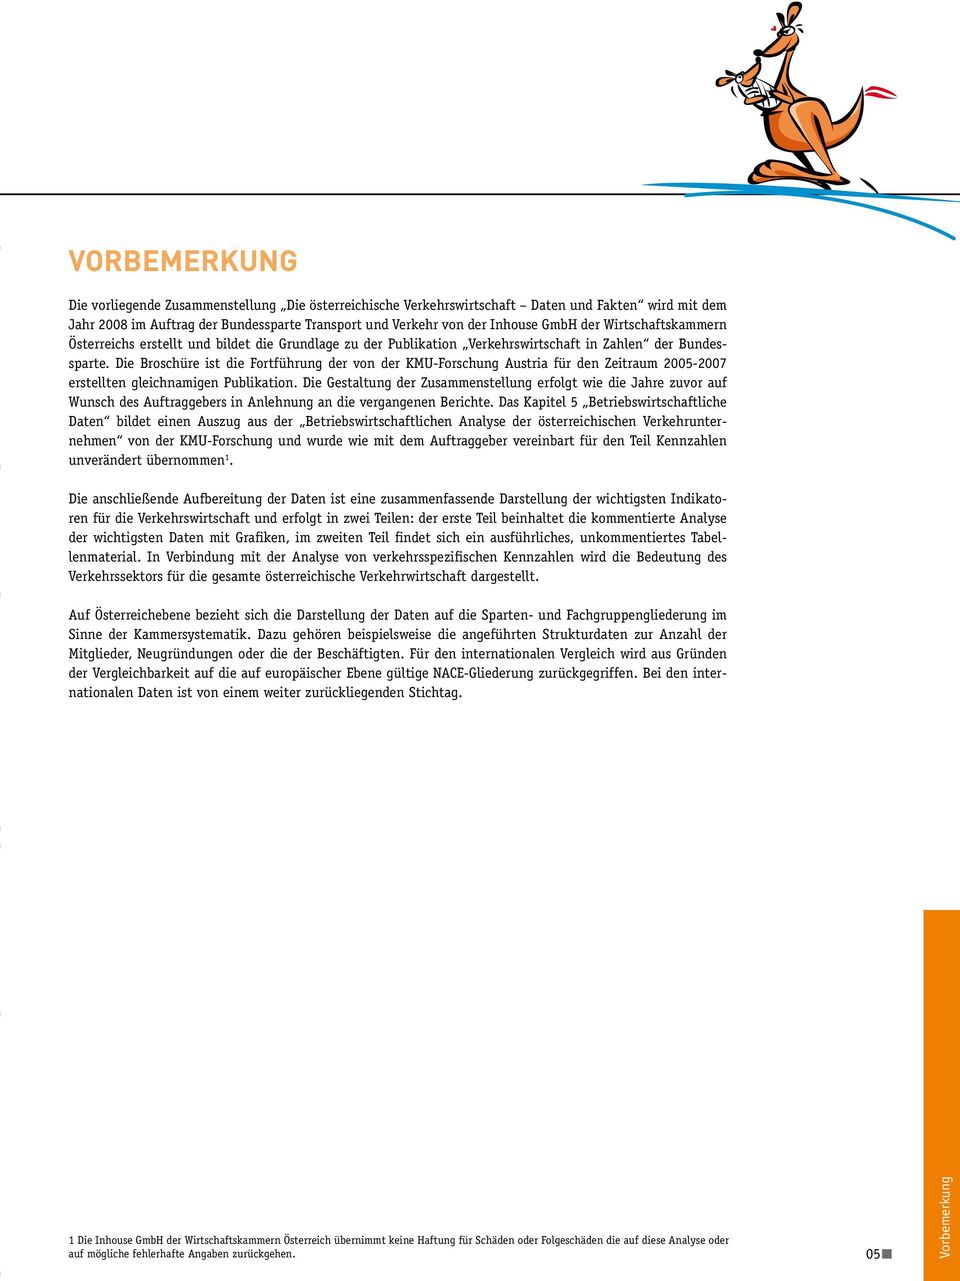 Auftrag der Bundessparte Transport und Verkehr von der Inhouse GmbH der Wirtschaftskammern Österreichs erstellt und bildet die Grundlage zu der Publikation Verkehrswirtschaft in Zahlen der